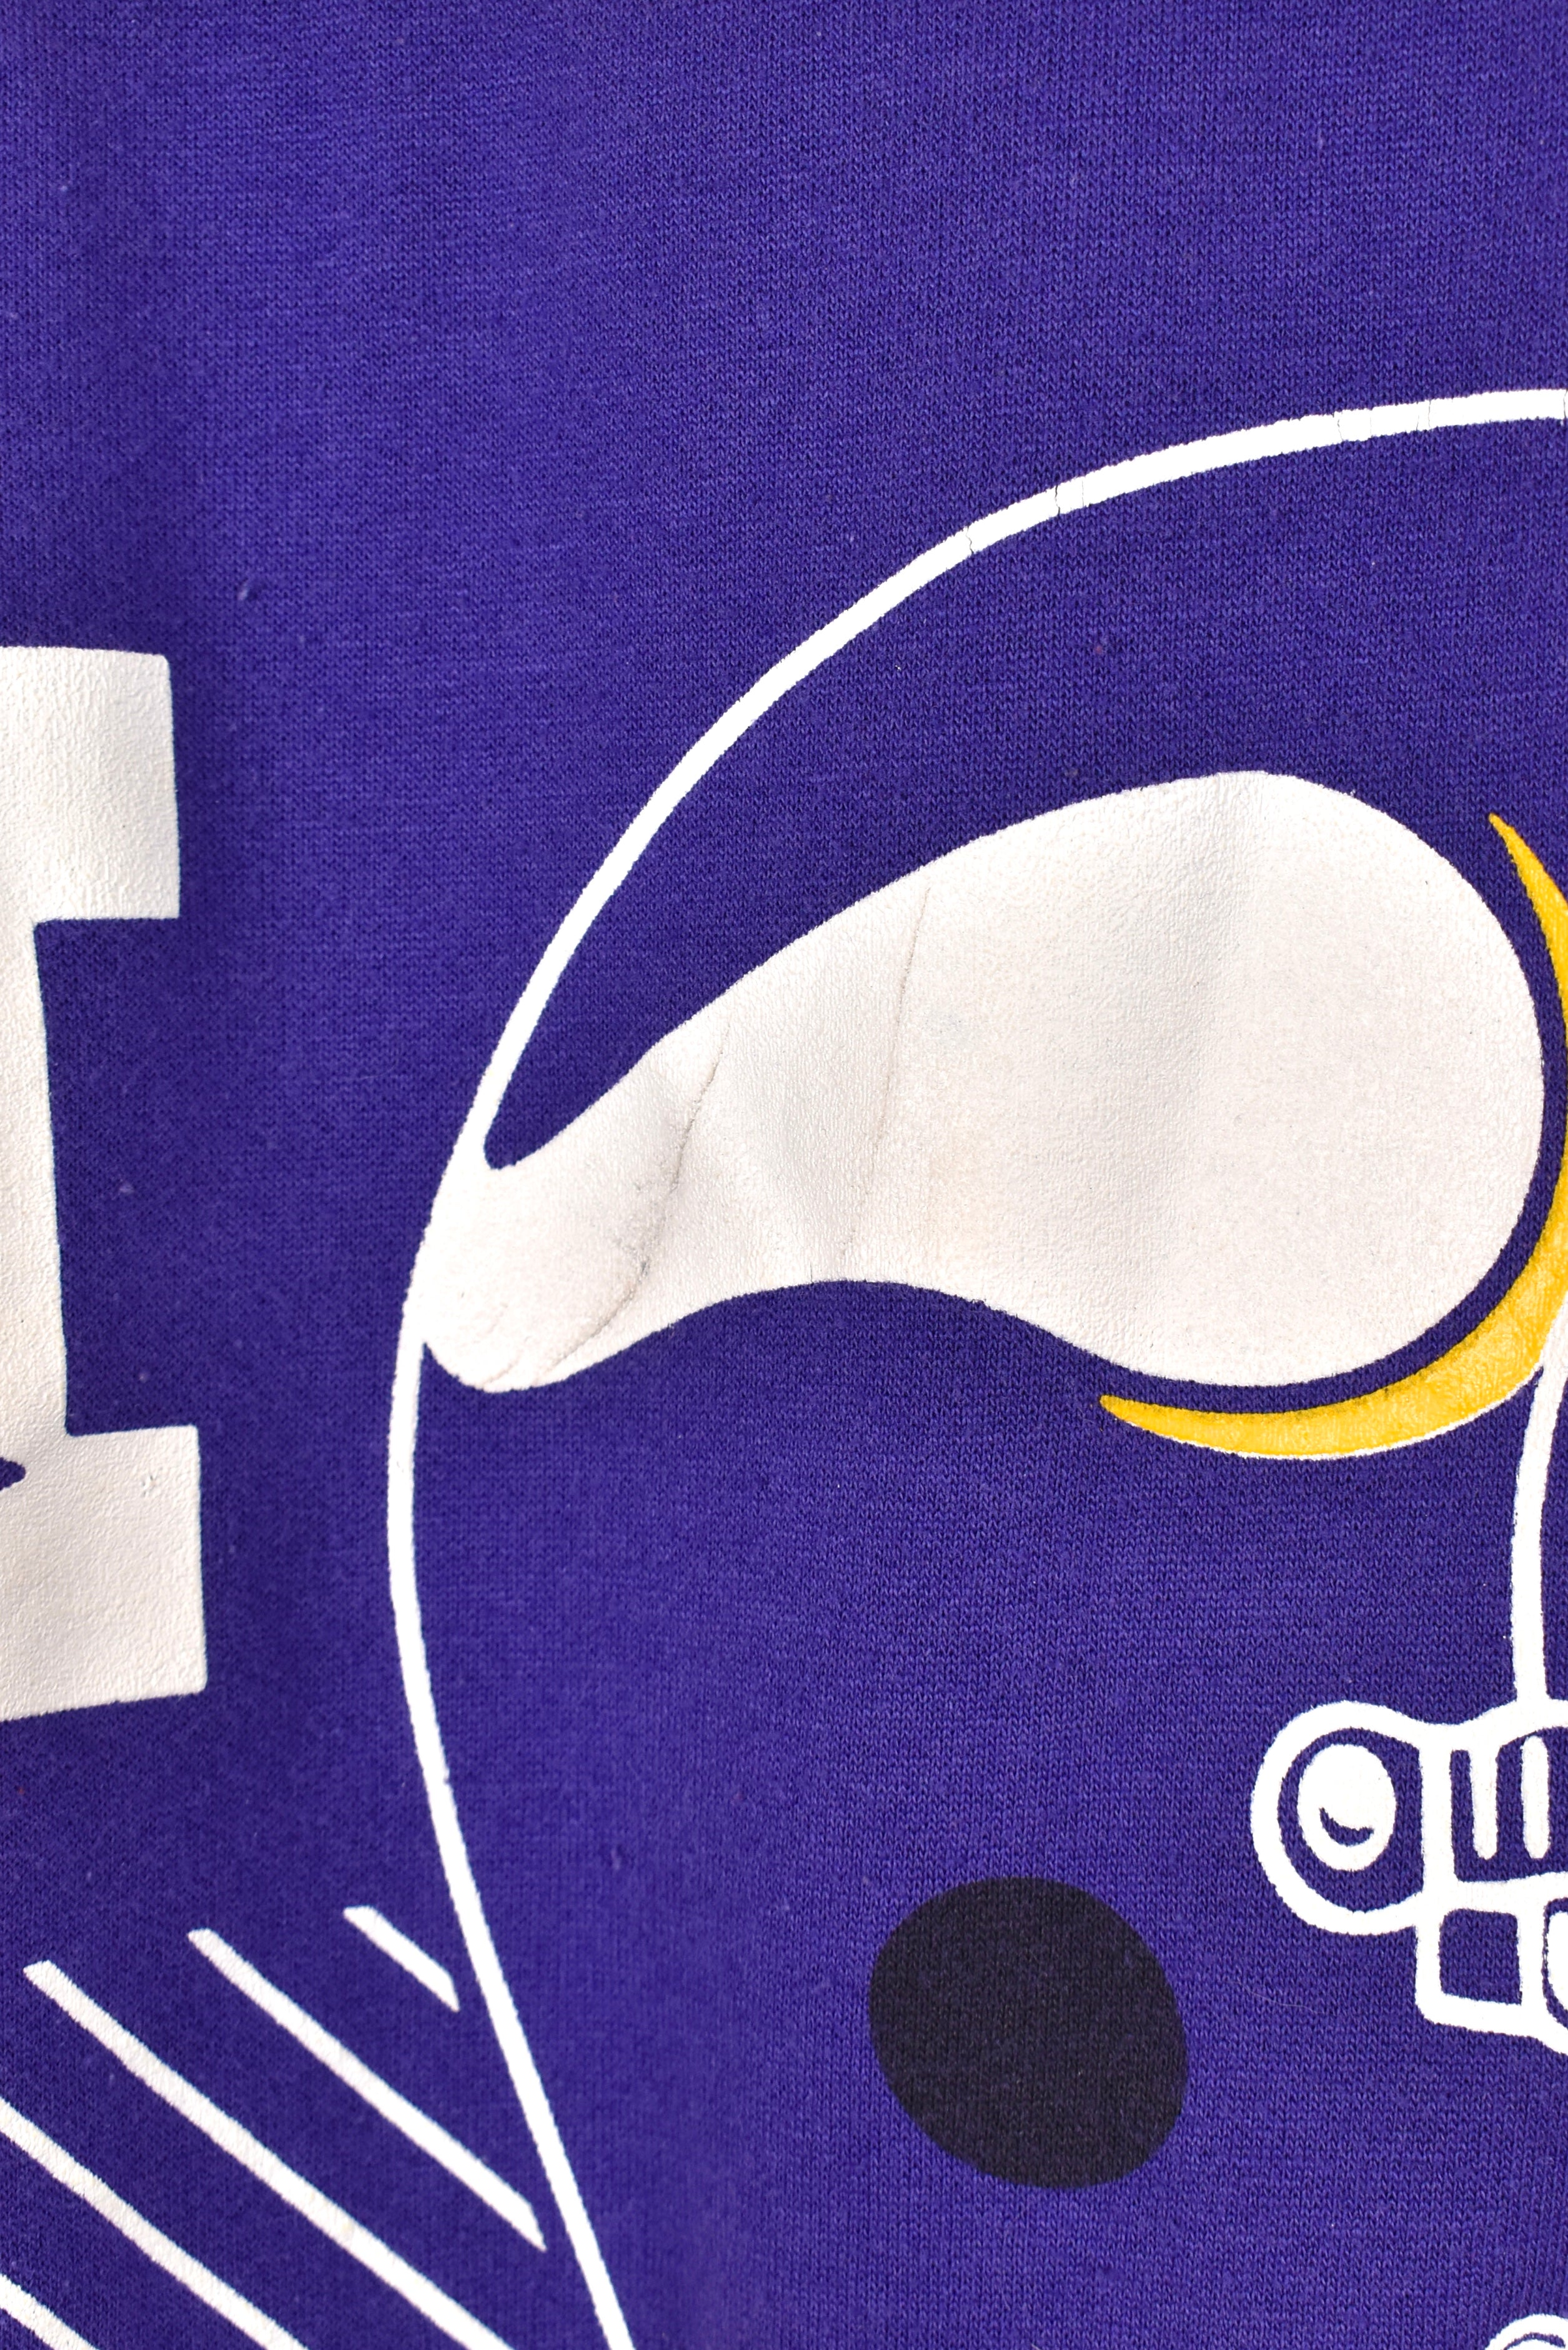 Vintage Minnesota Vikings sweatshirt, NFL purple crewneck - M/L